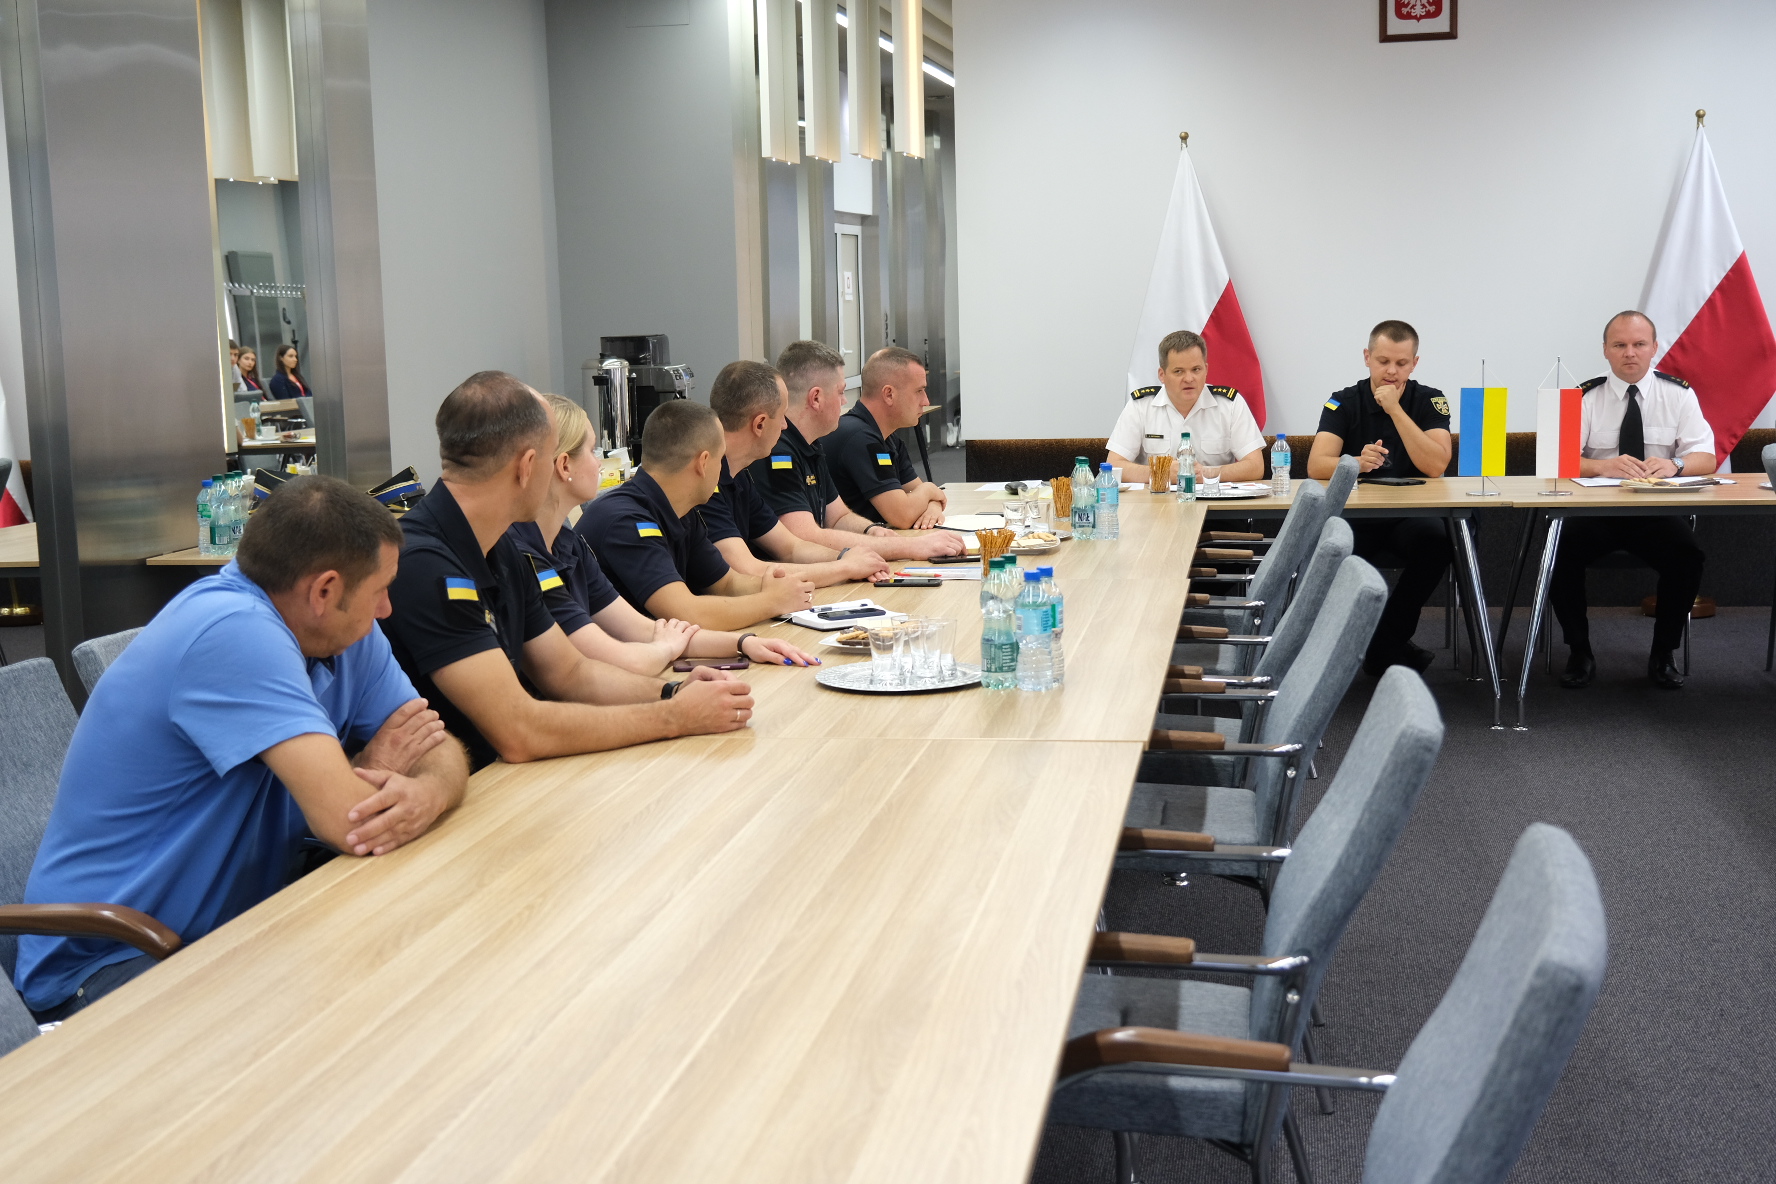 Sala konferencyjna w KG PSP za stołami ustawionymi w kształcie podkowy siedzą przedstawiciele ukraińskiej delegacji, Komendy Głównej i Szkoły Głównej Służby Pożarniczej. 